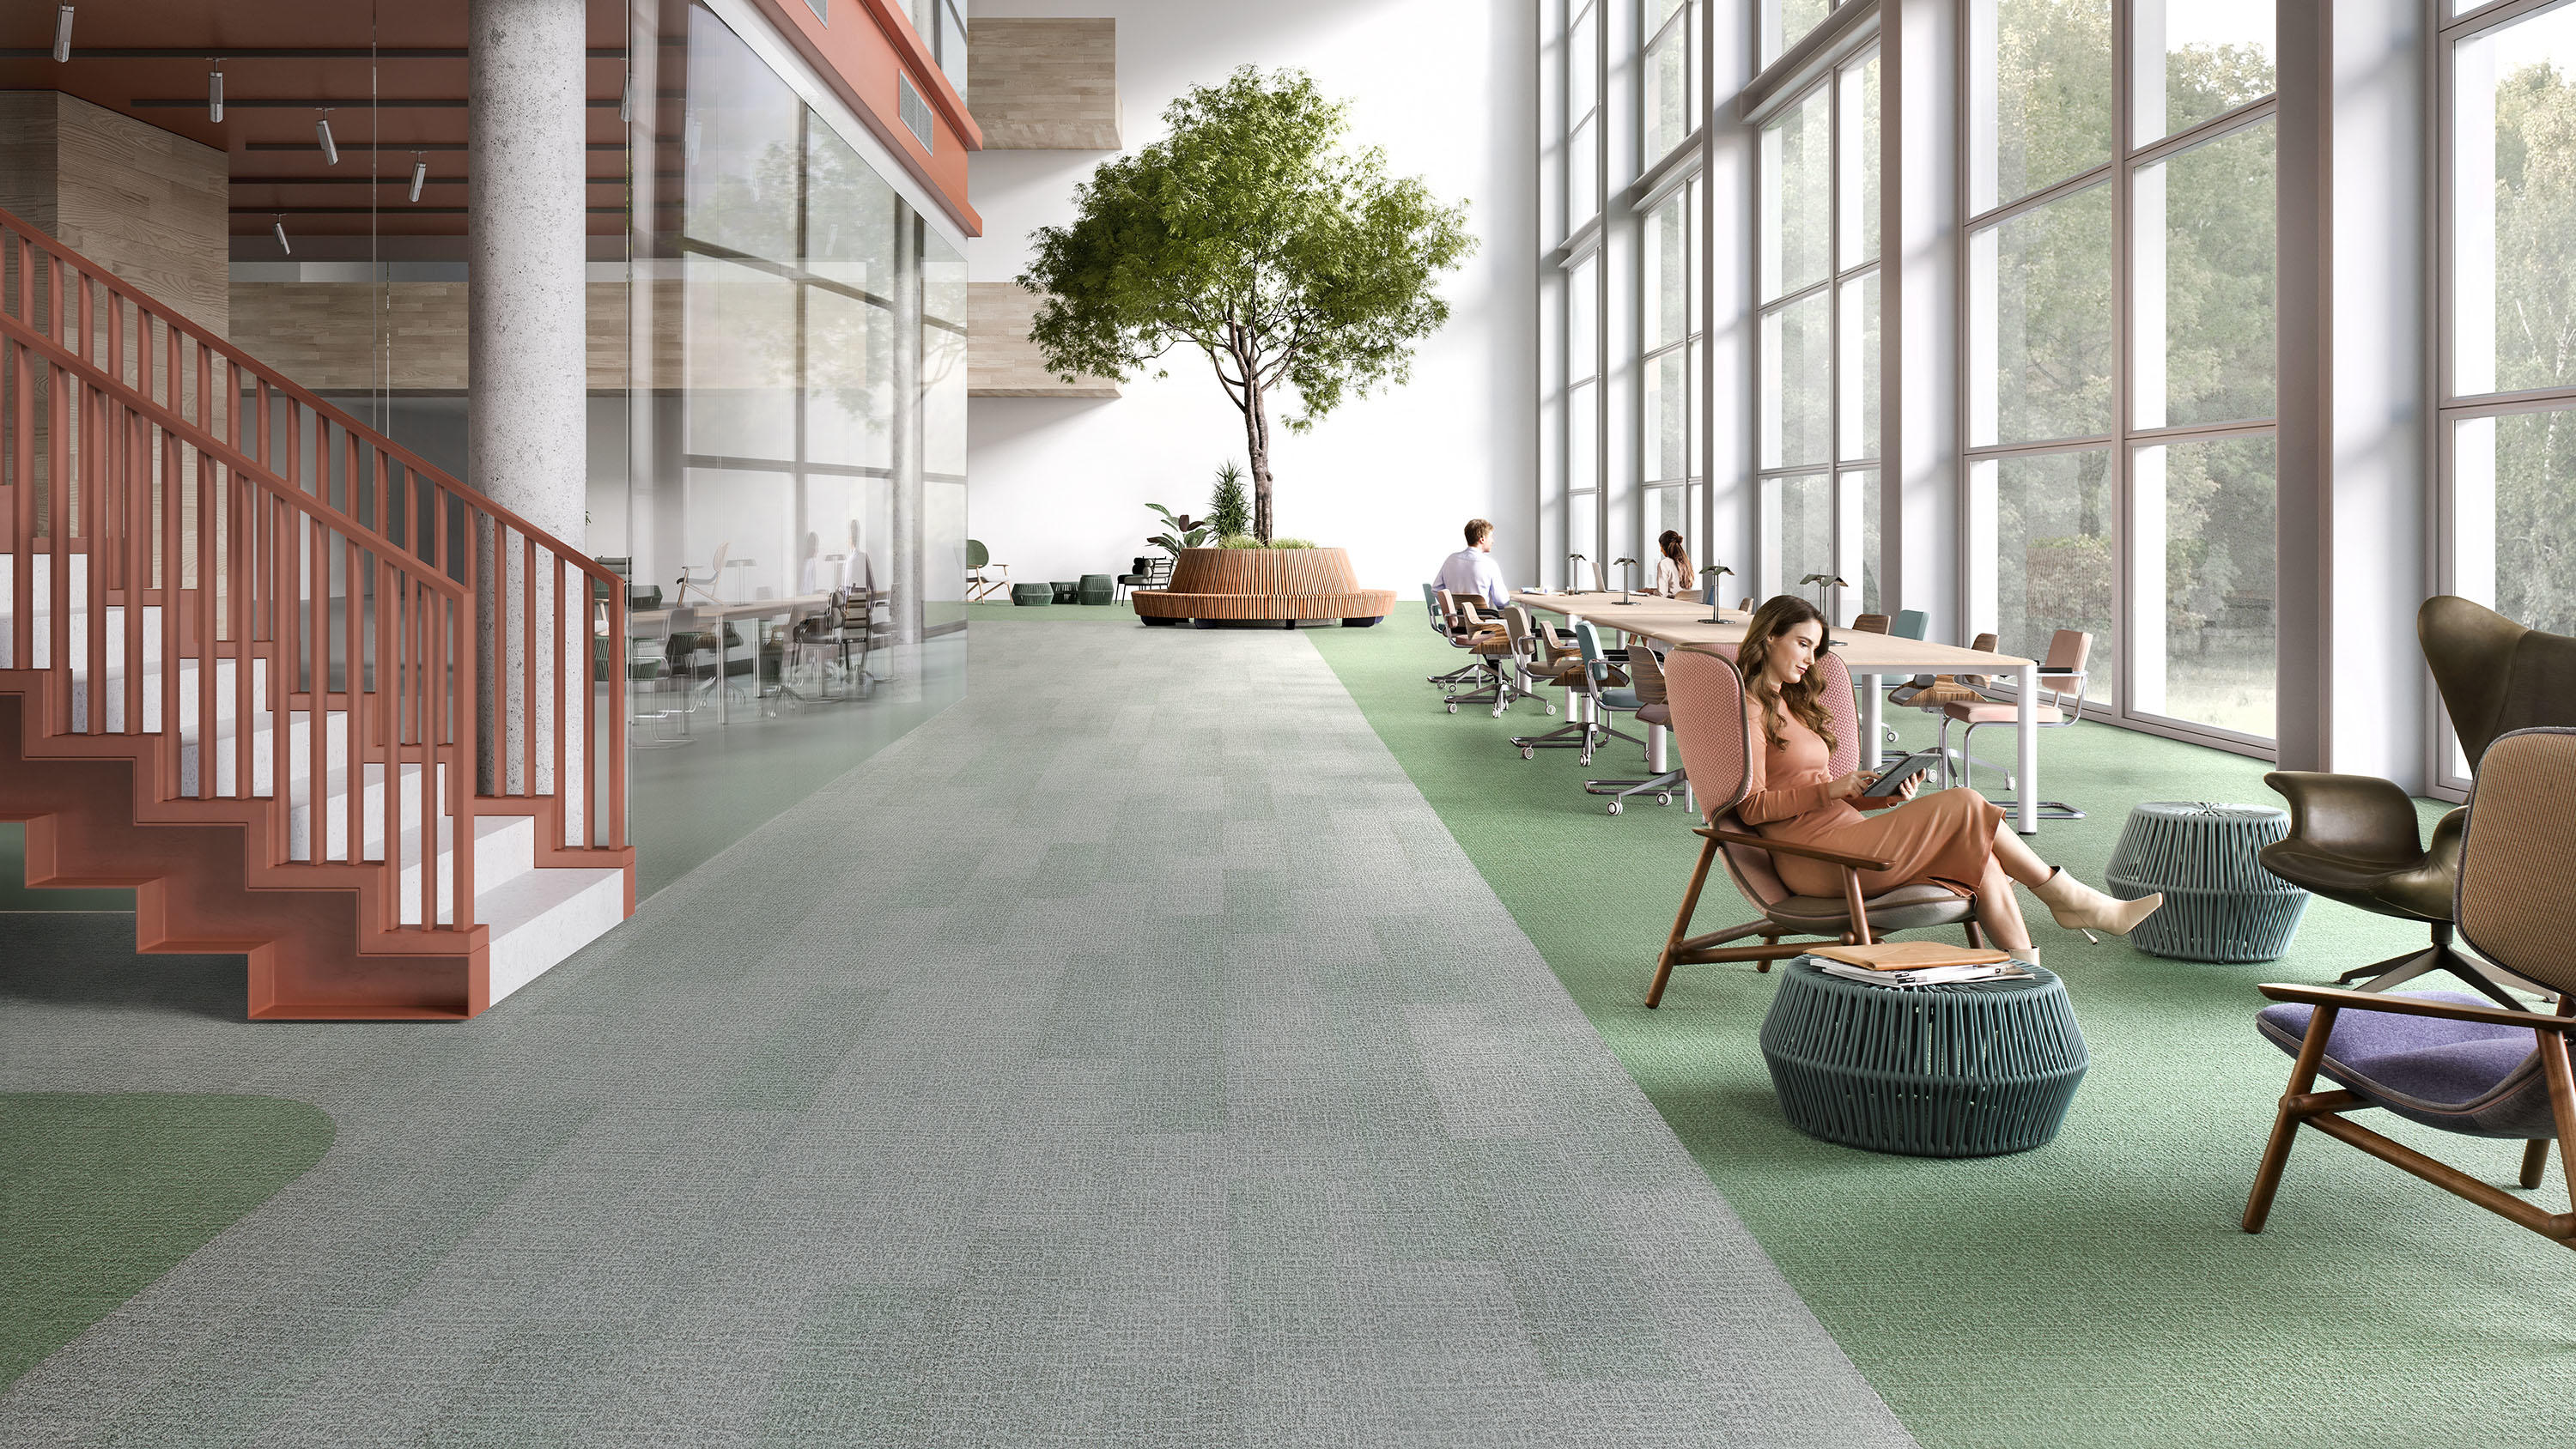 Carpet plank flooring in a open office landscape